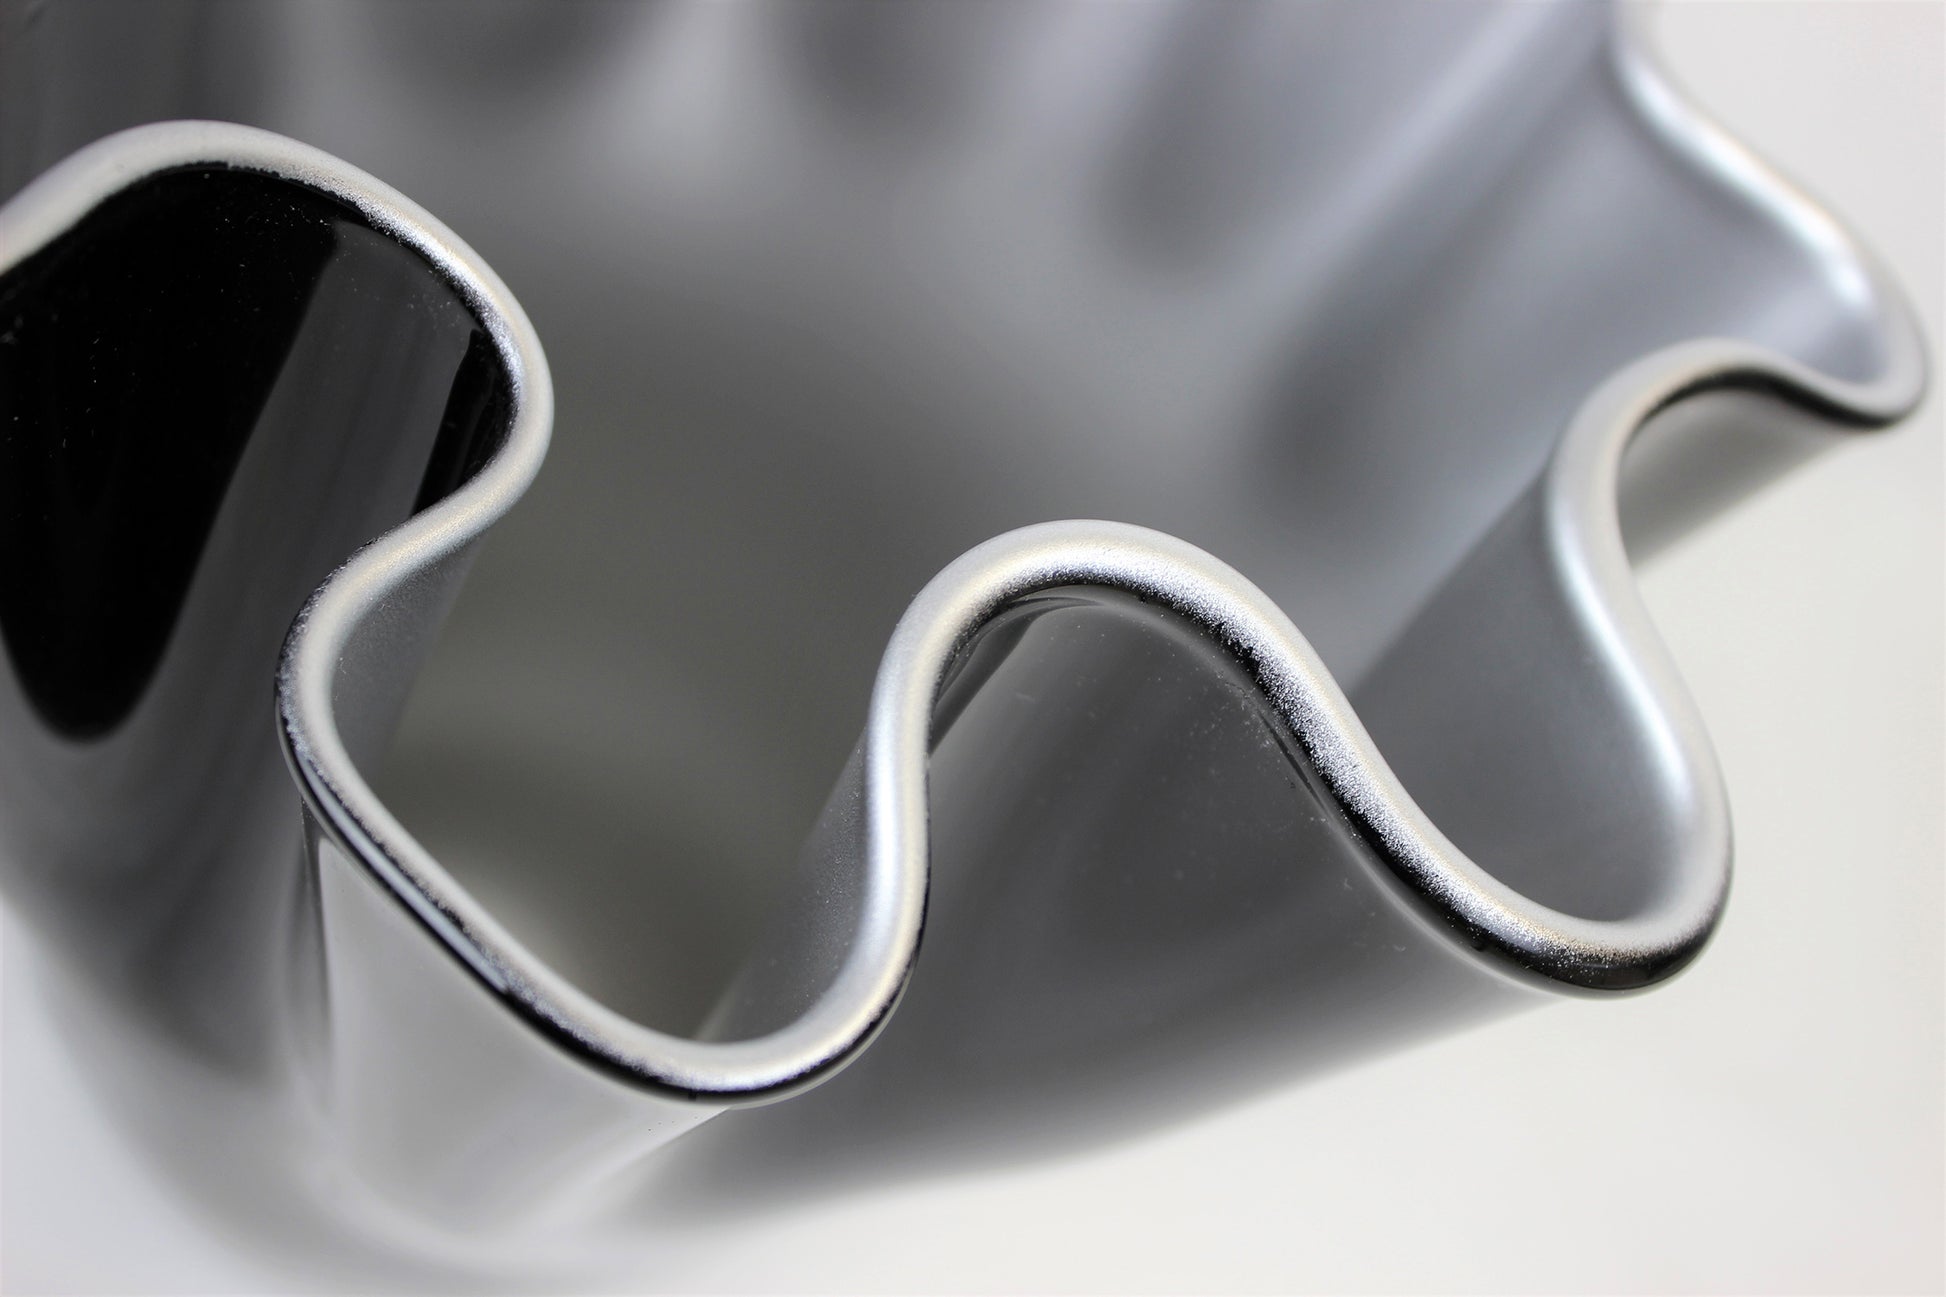 Silber schwarze Vase aus Glas metallisch glänzend